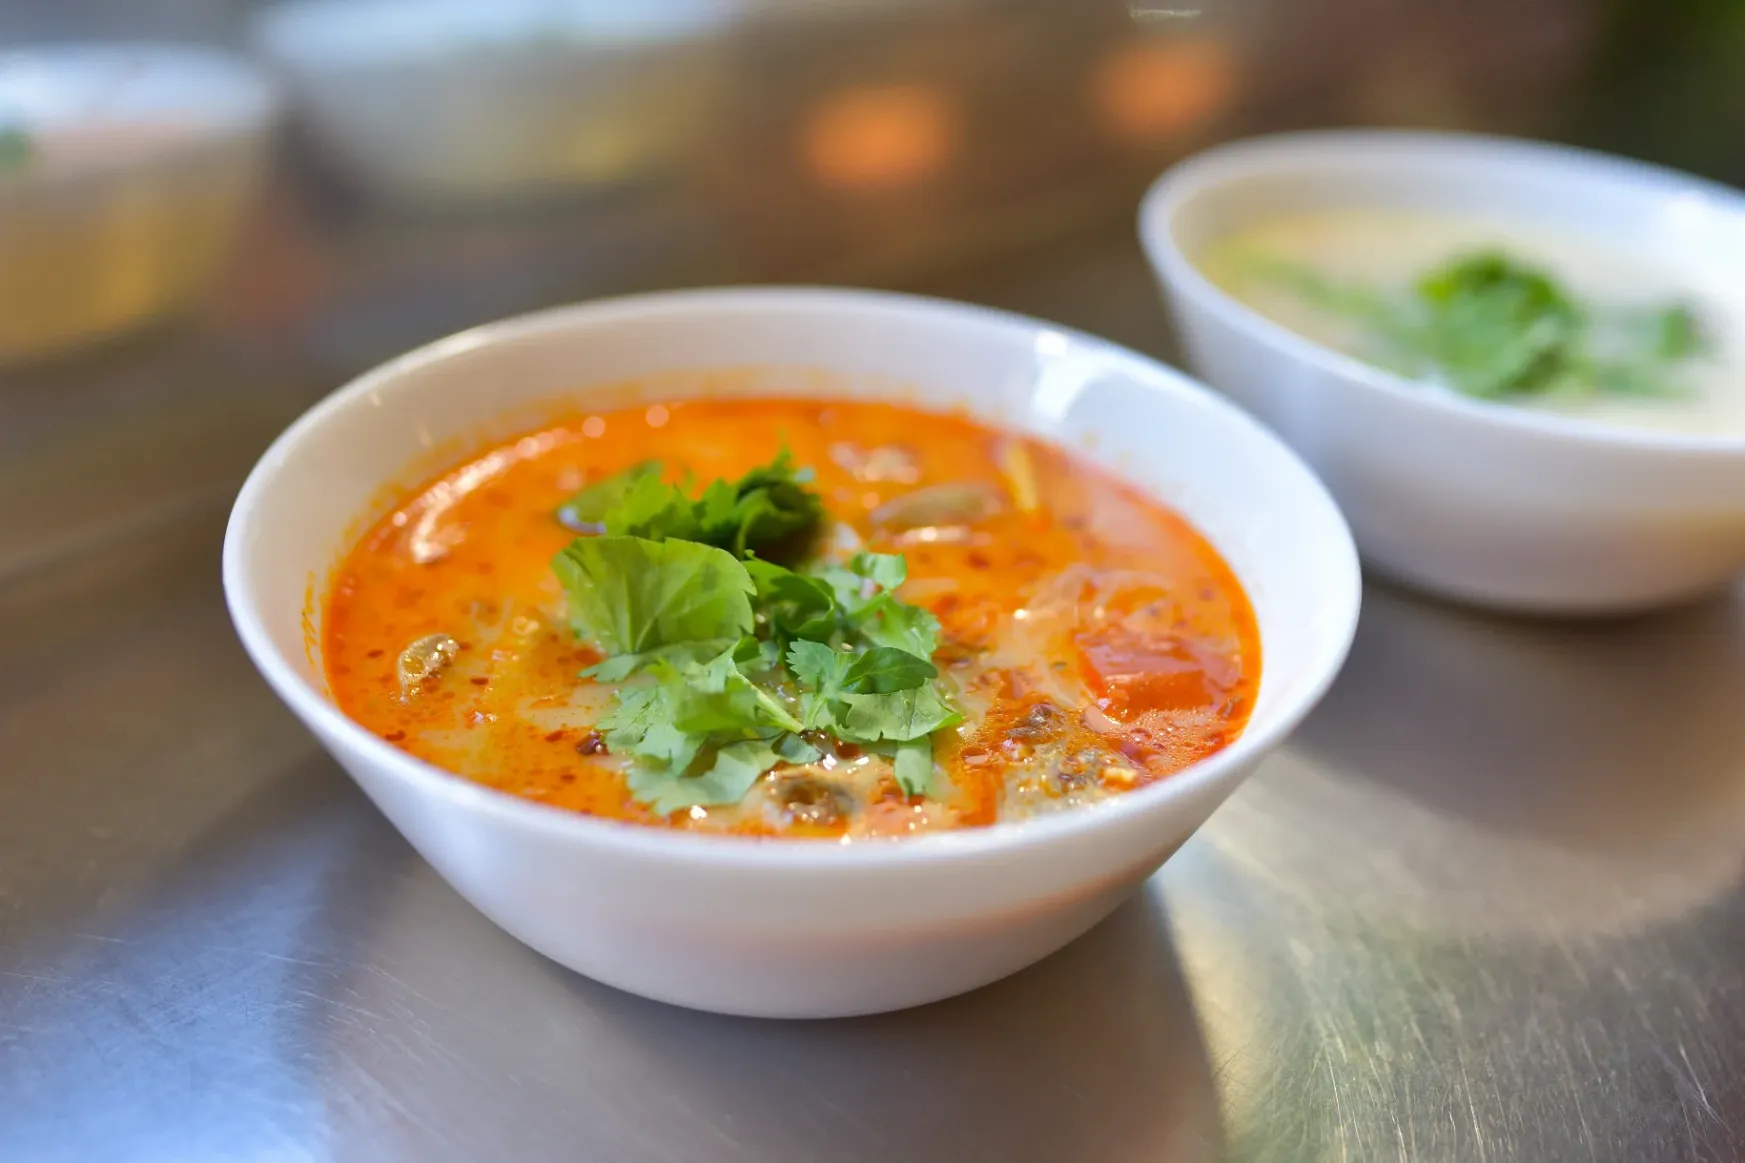 Amiért egy kis thai curryzőhöz hűségesek lettünk